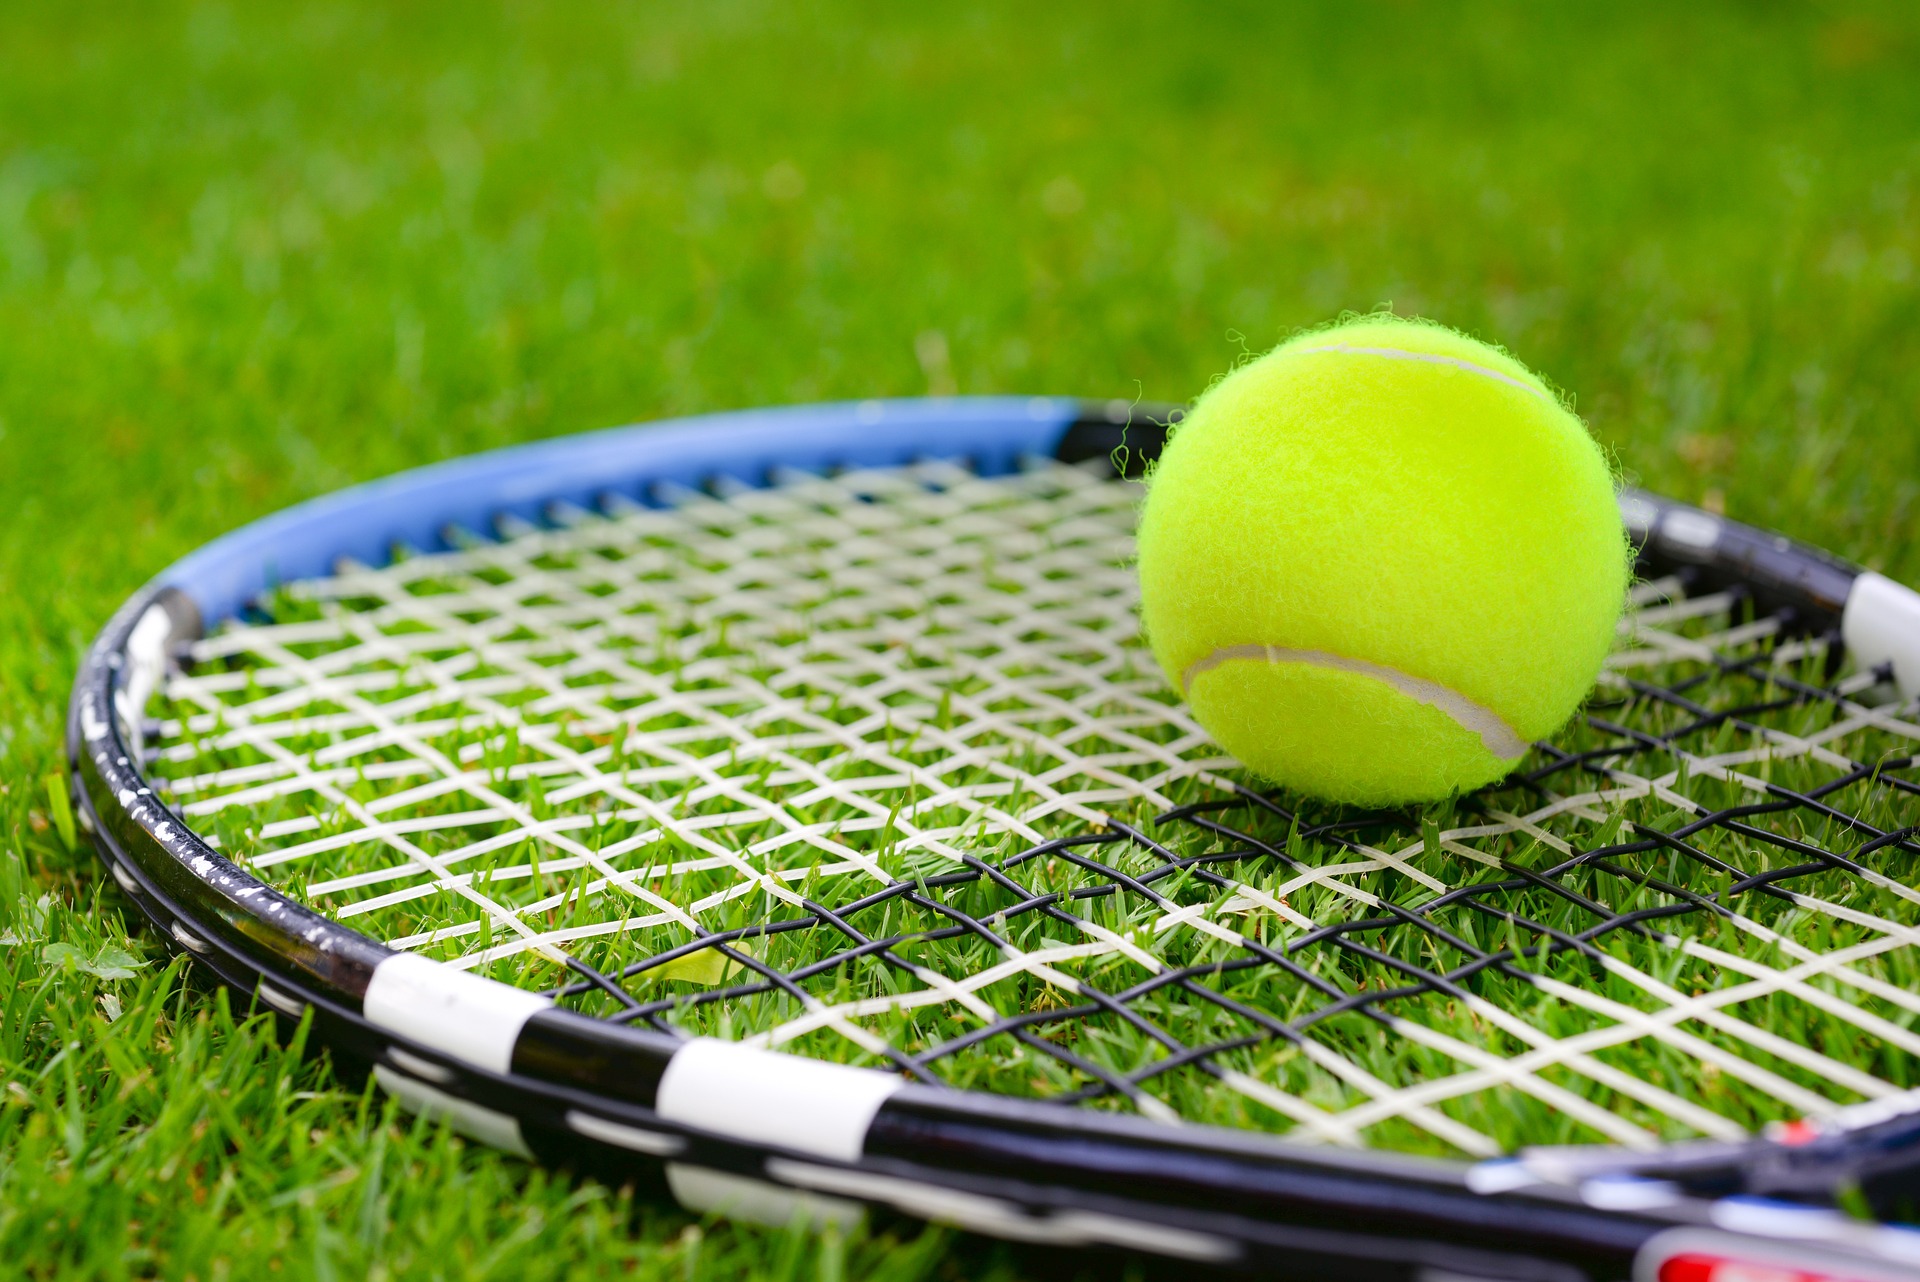 테니스 관련 사진(라켓과 공)